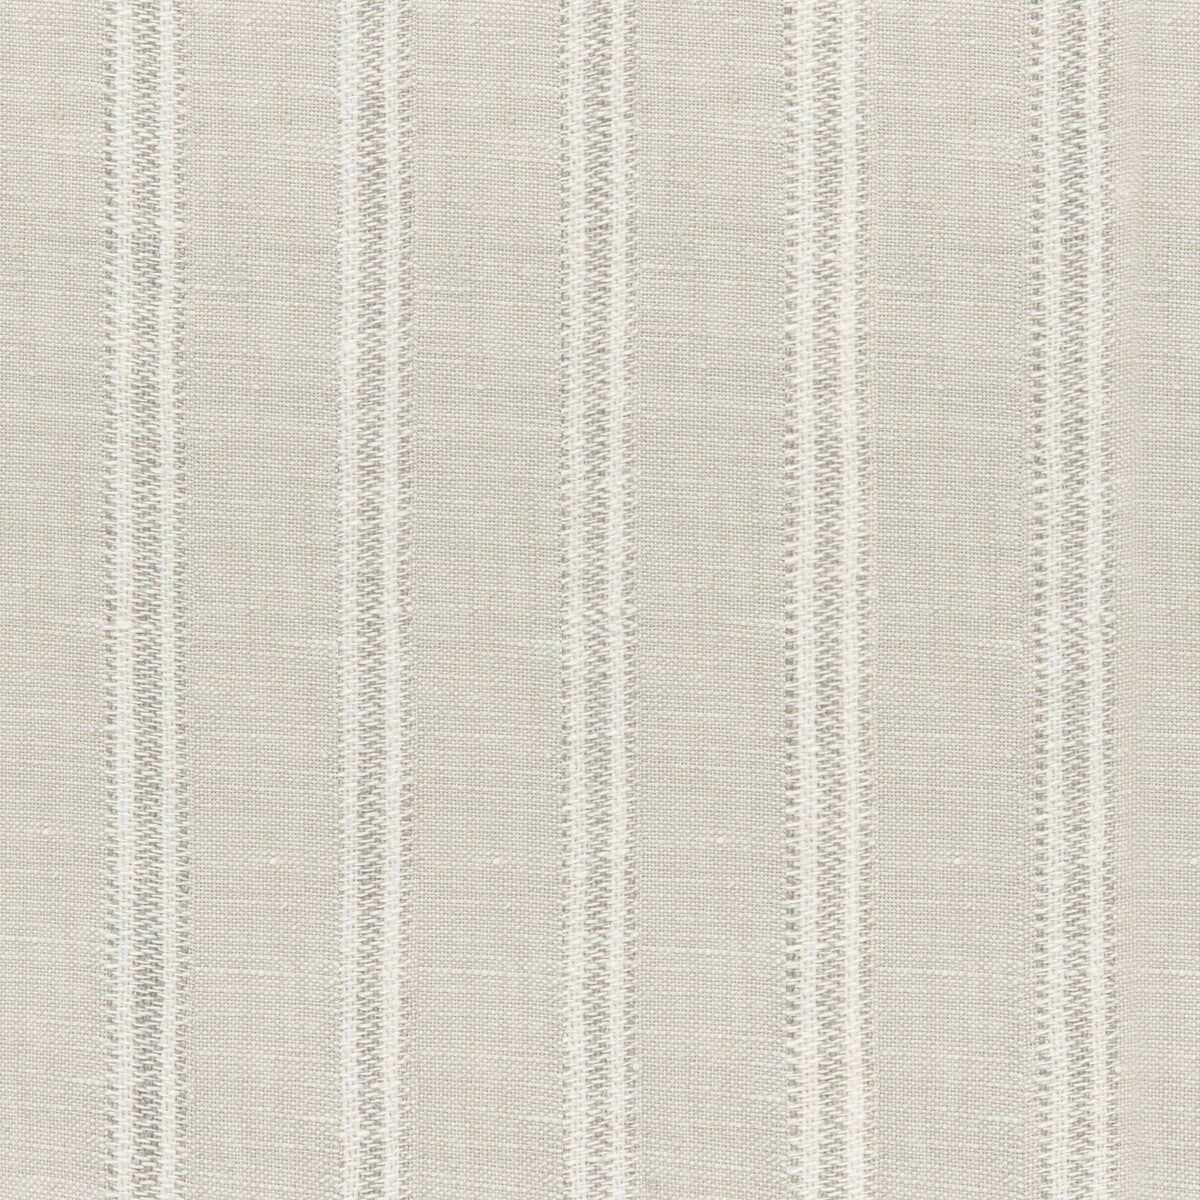 Kravet Design fabric in 4842-11 color - pattern 4842.11.0 - by Kravet Design